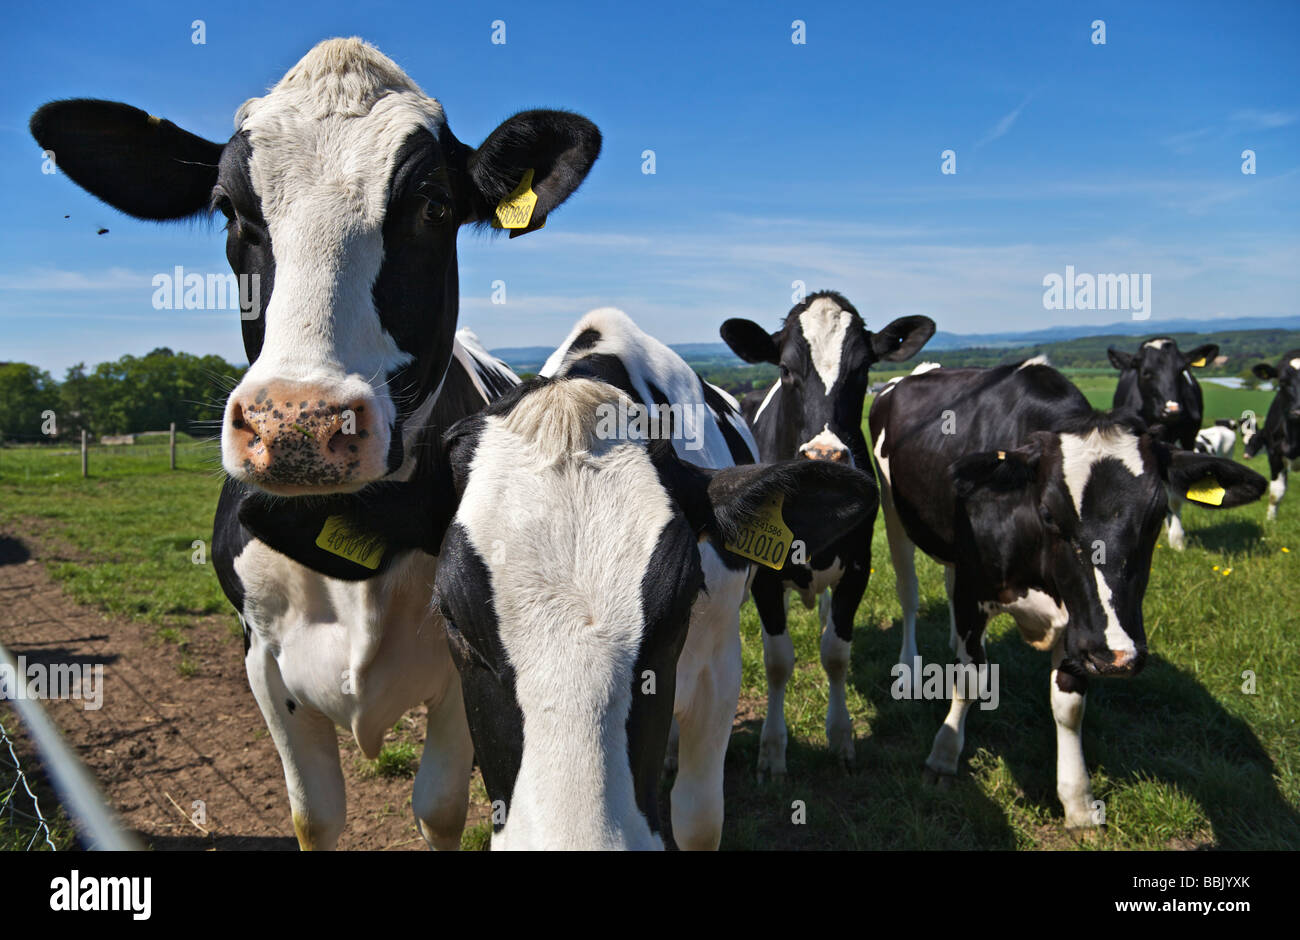 Troupeau de bovins laitiers au domaine sgainst ciel bleu Banque D'Images